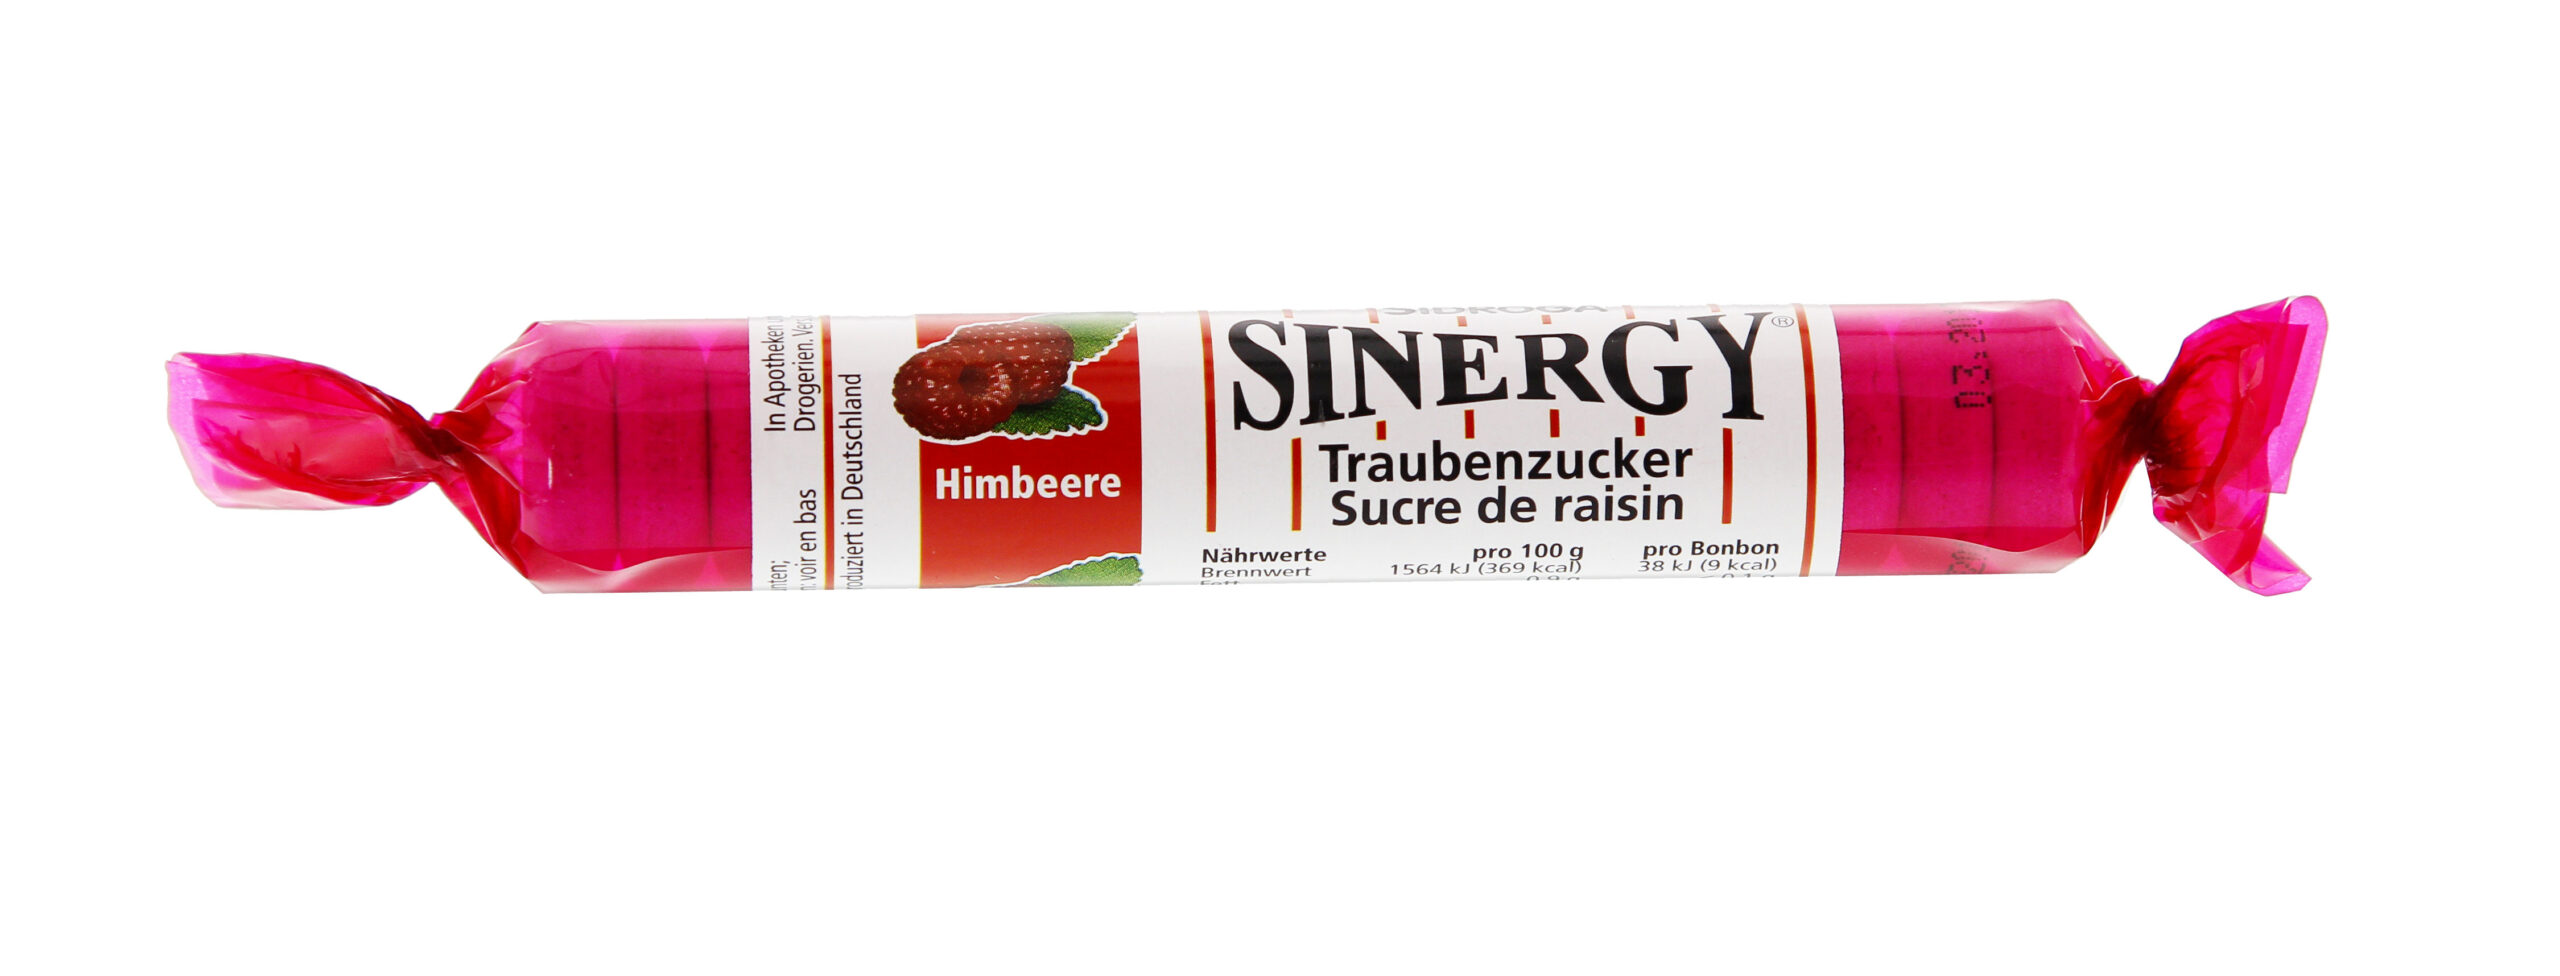 SINERGY Traubenzucker Himbeere Rolle 40 g